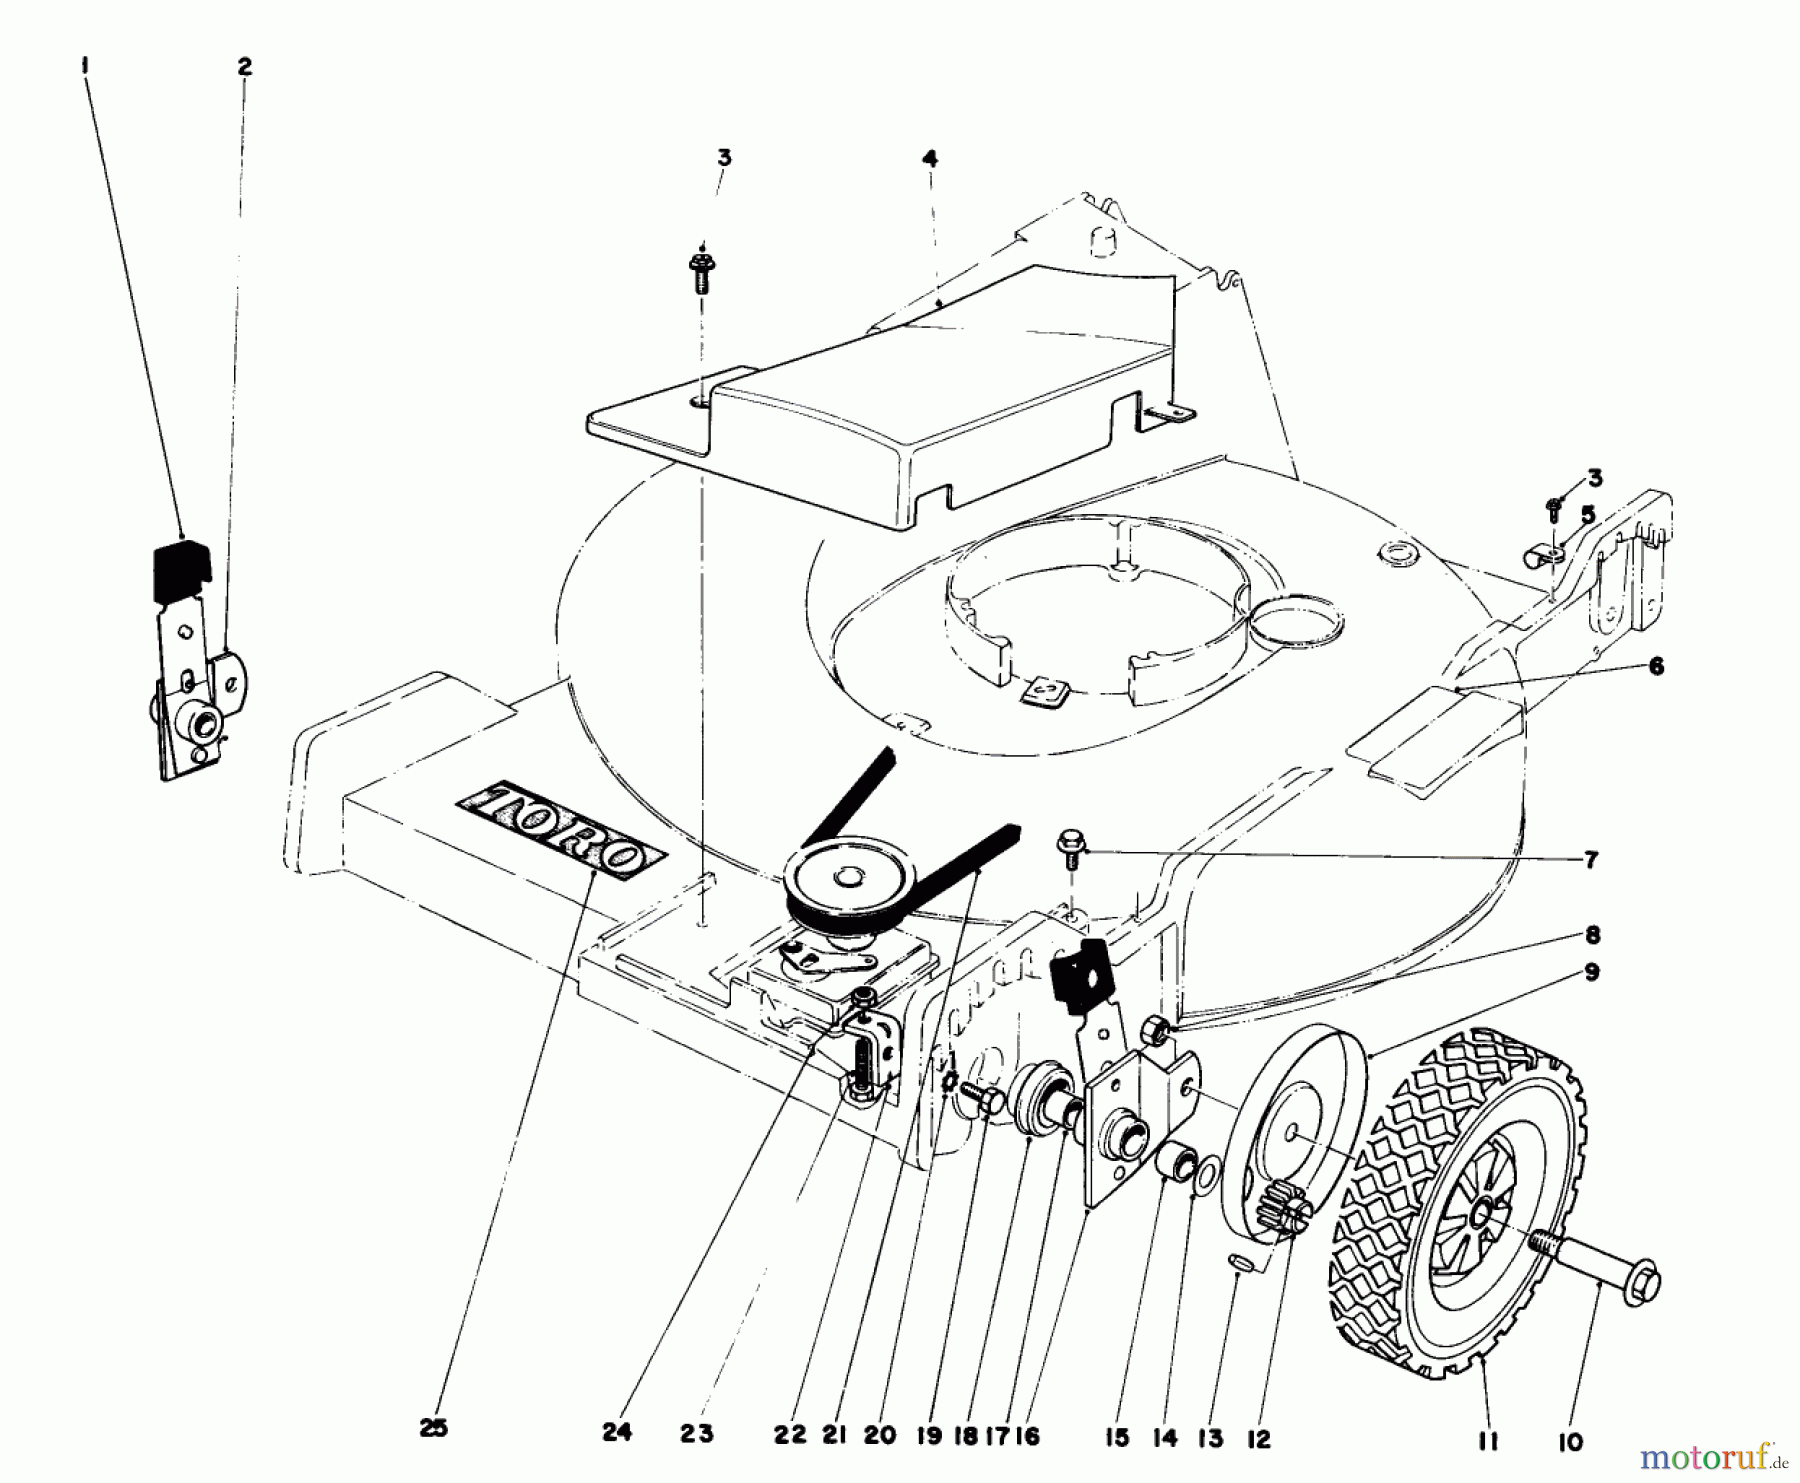  Toro Neu Mowers, Walk-Behind Seite 1 20765 - Toro Lawnmower, 1981 (1000001-1999999) FRONT WHEEL AND PIVOT ARM ASSEMBLY